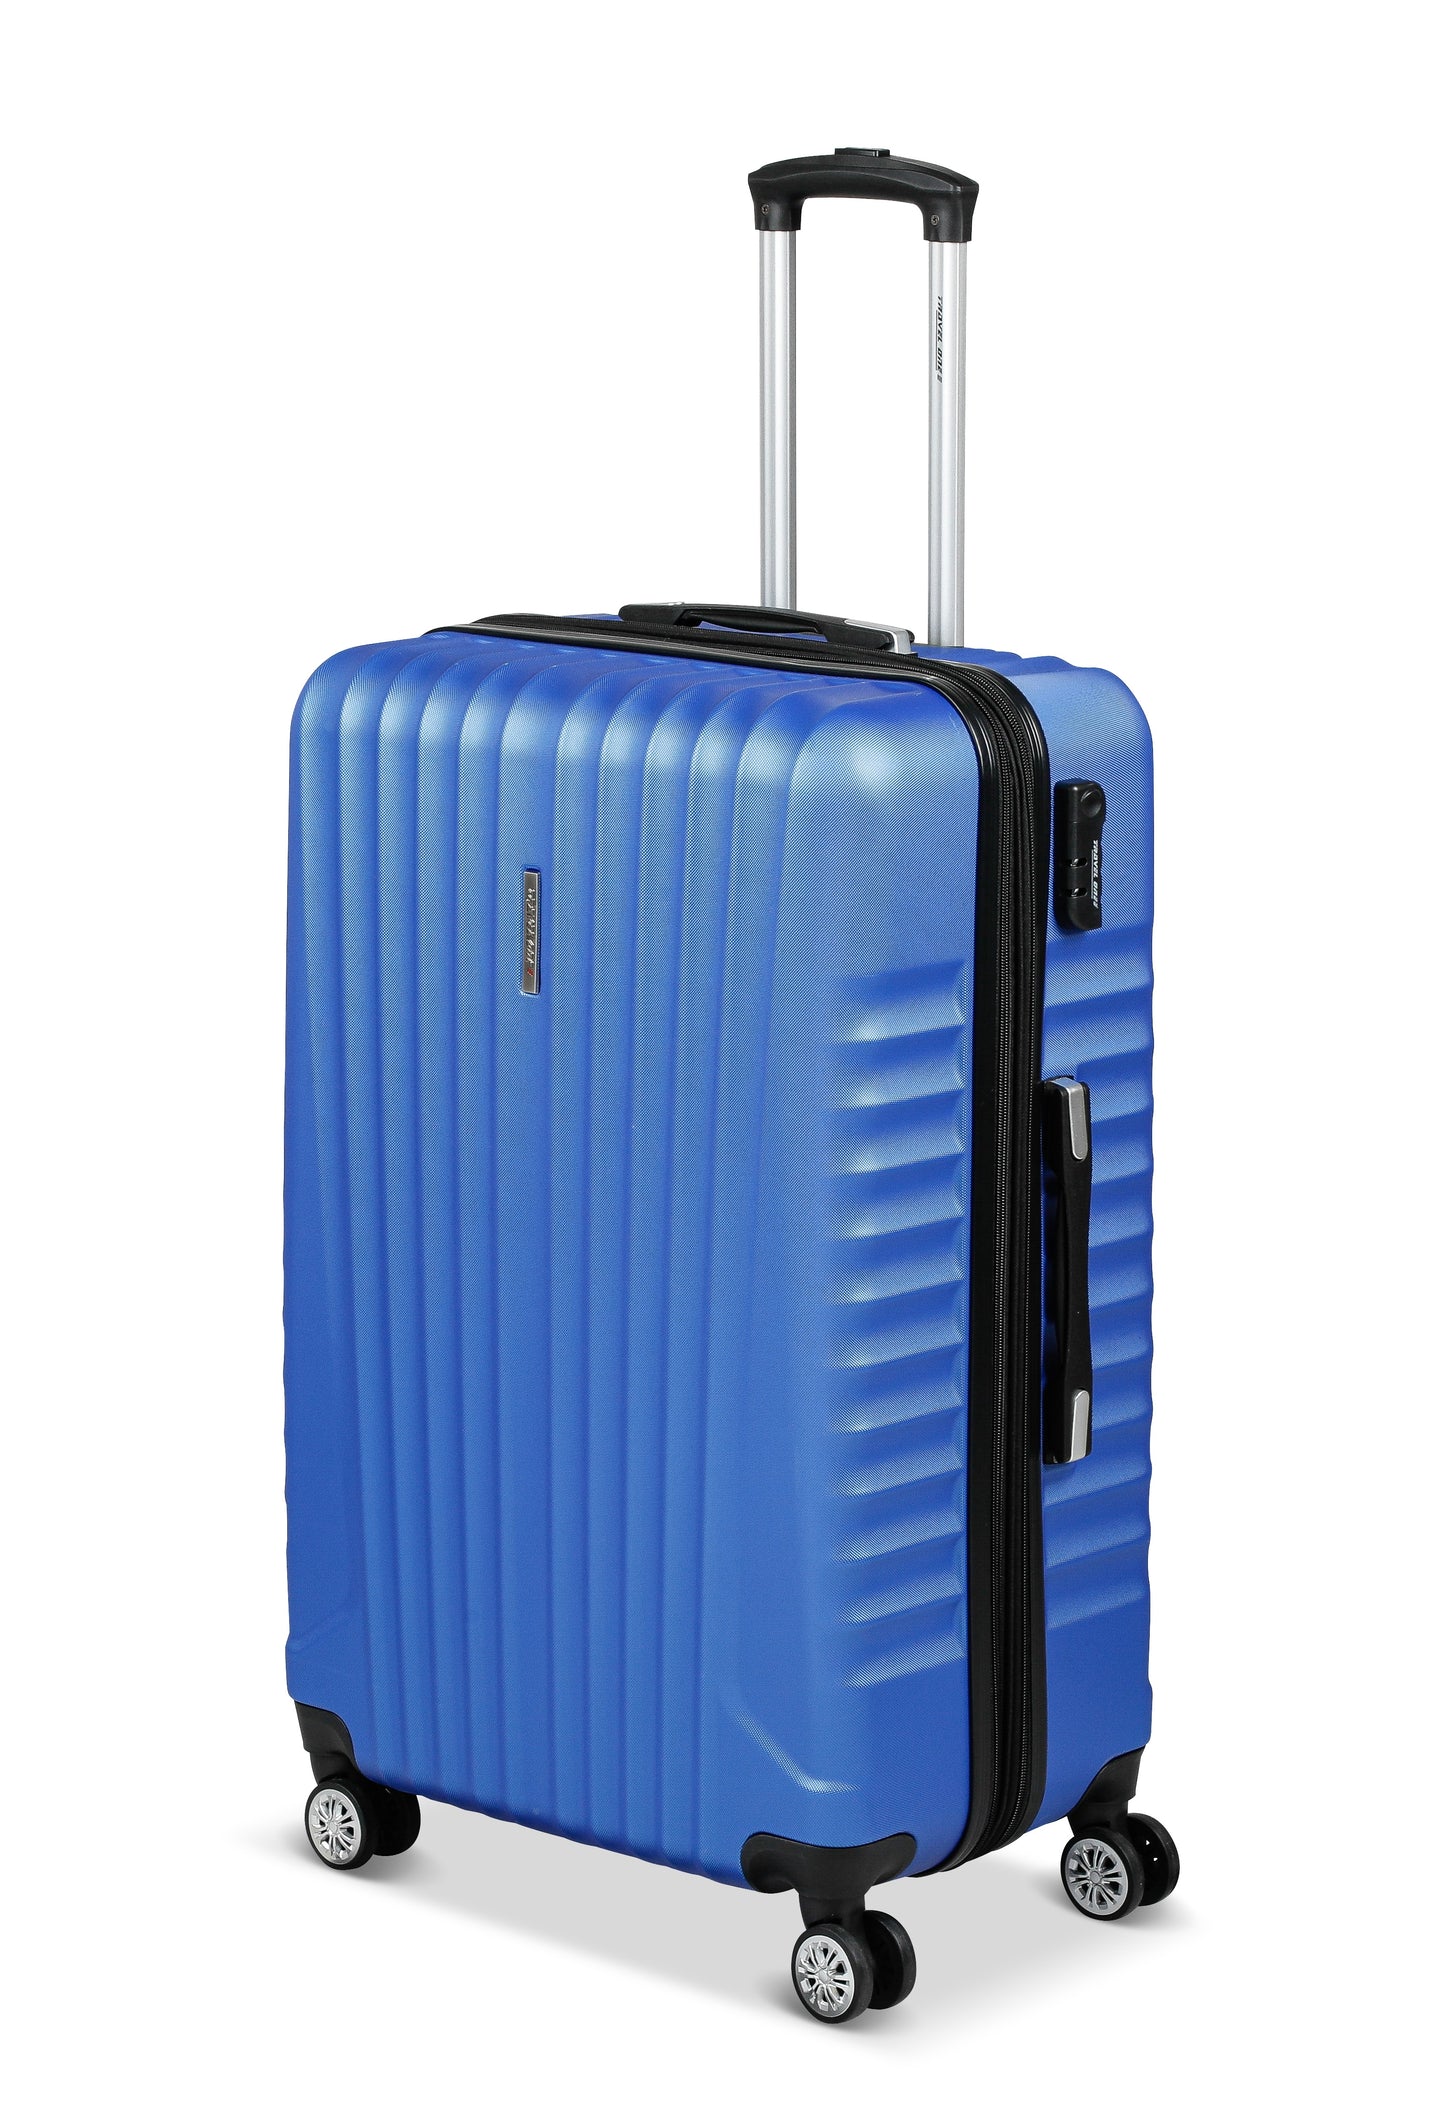 Valise Travel One Bleu Taille Large 76cm extensible vue de profil